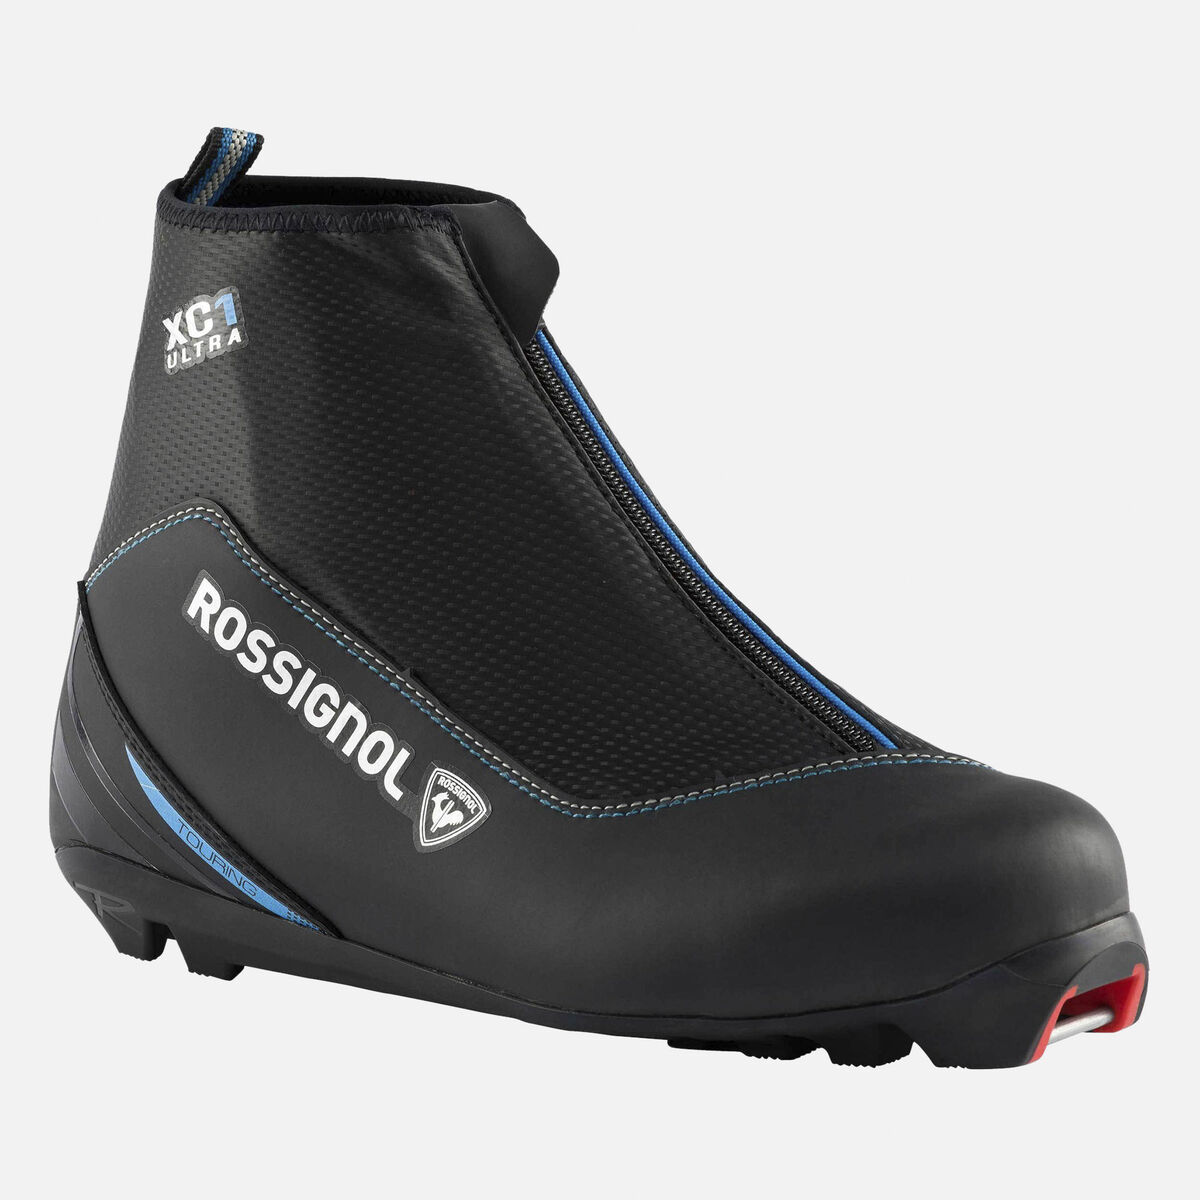 Chaussures de ski nordique Touring Femme Boots X-1 Ultra Fw